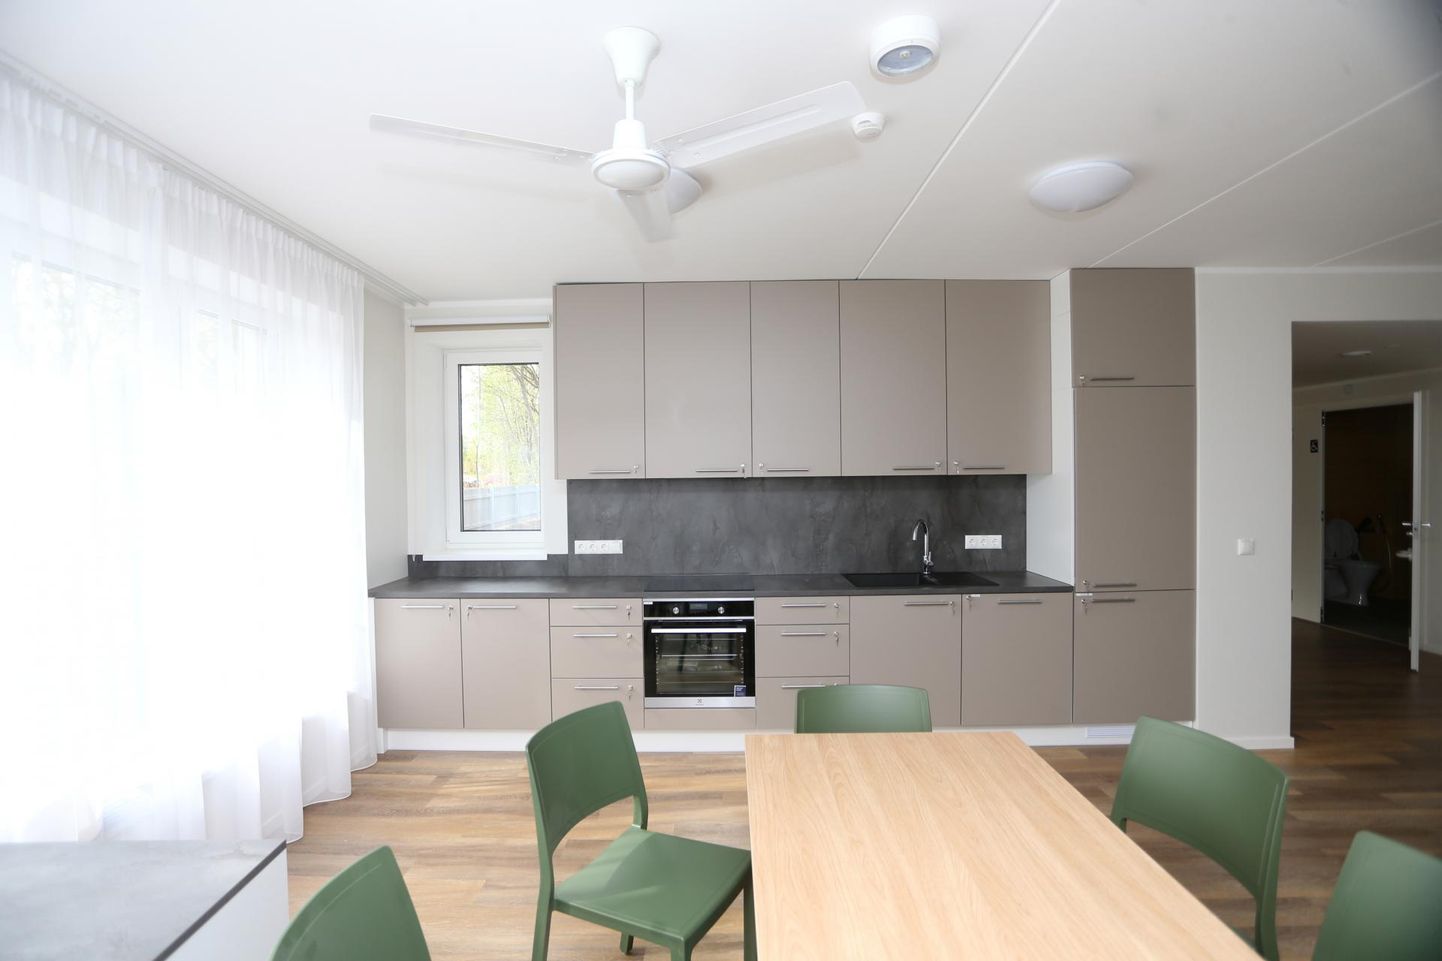 Uute elanike kasutada on korteris oma tuba ja suur ühisköök, kus saab ise süüa teha.